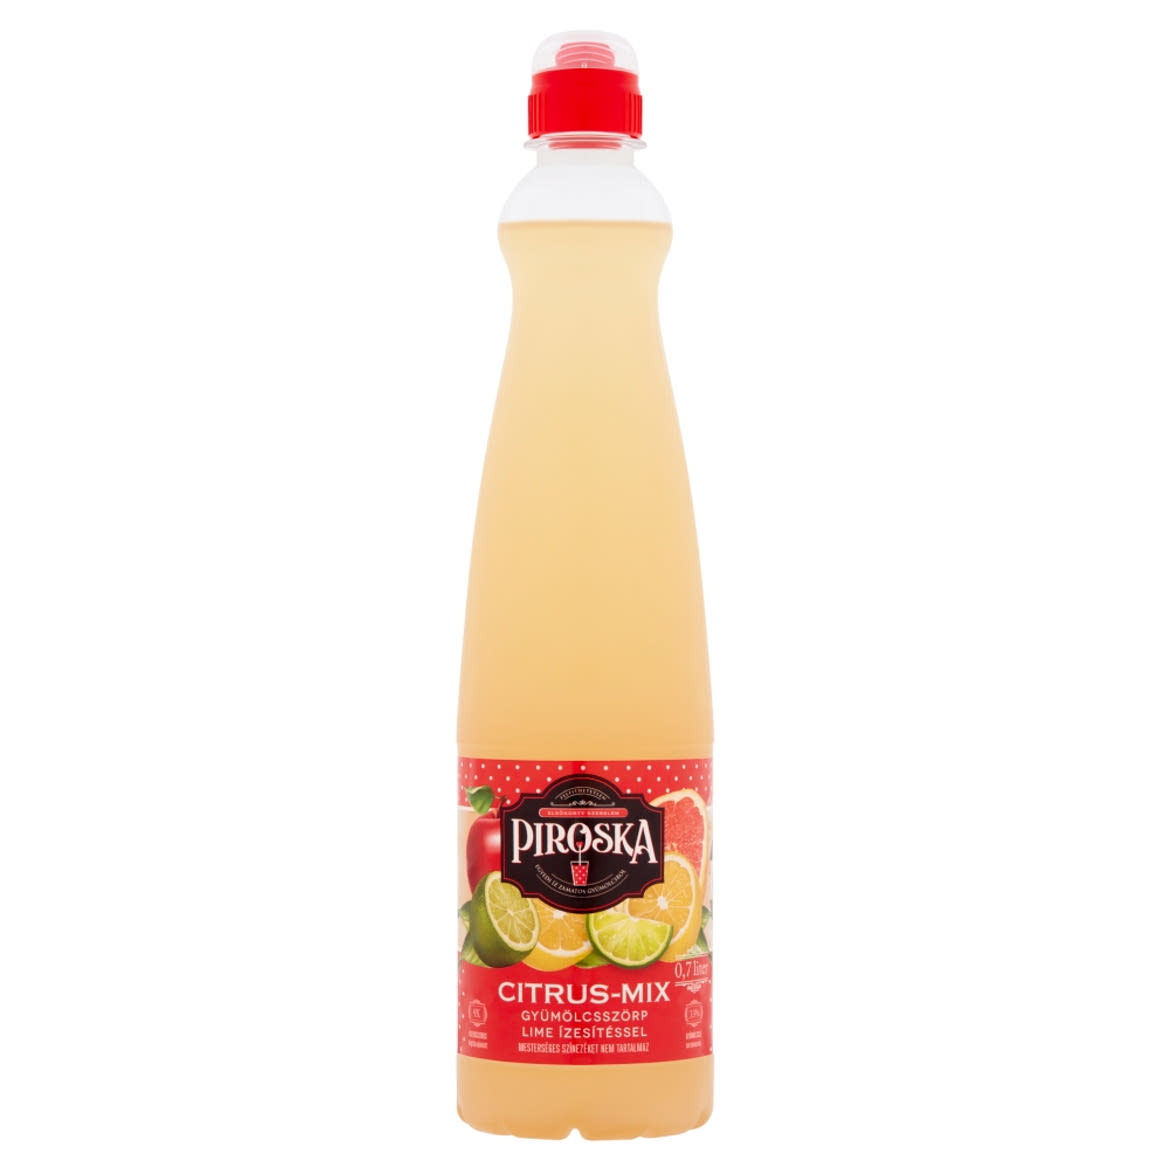 Piroska Citrus-Mix gyümölcsszörp lime ízesítéssel